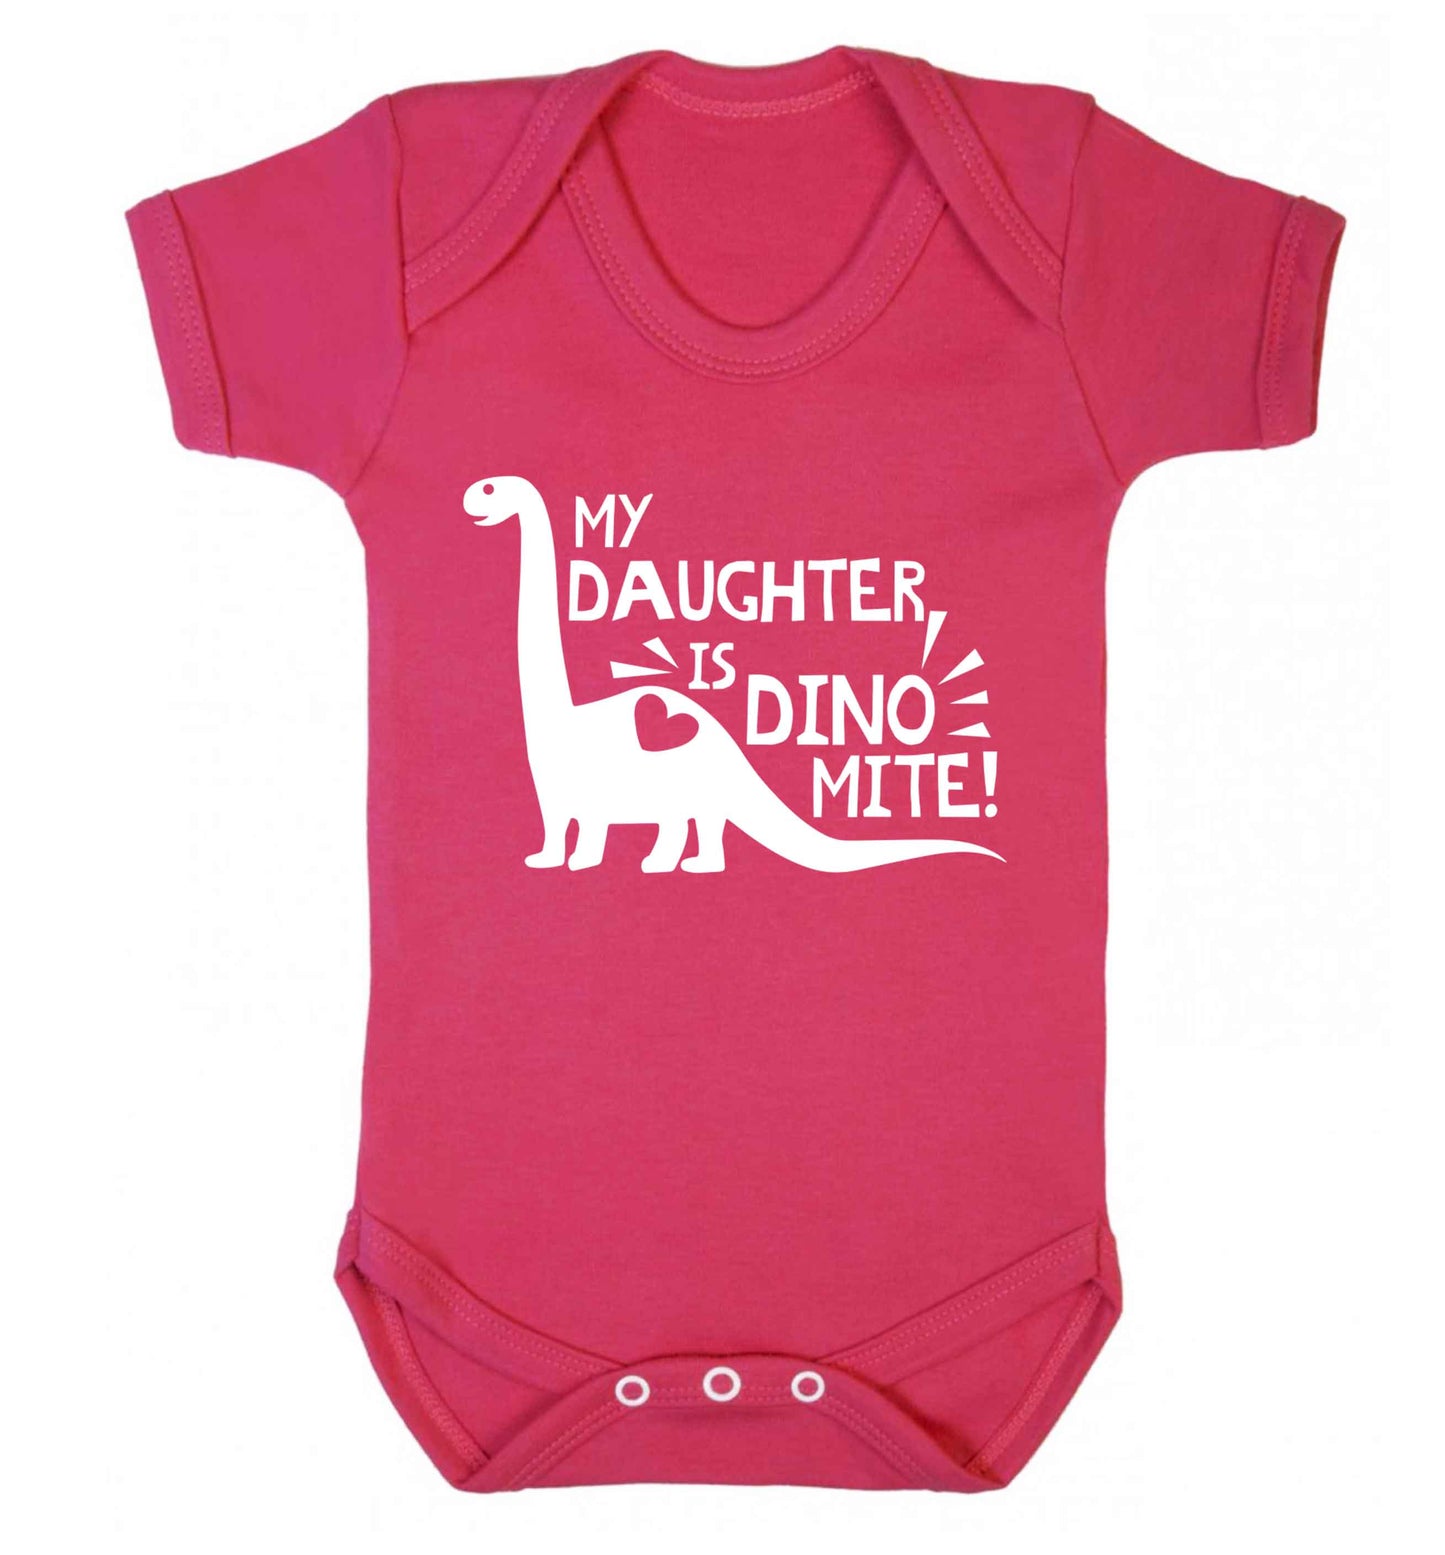 My daughter is dinomite! Baby Vest dark pink 18-24 months